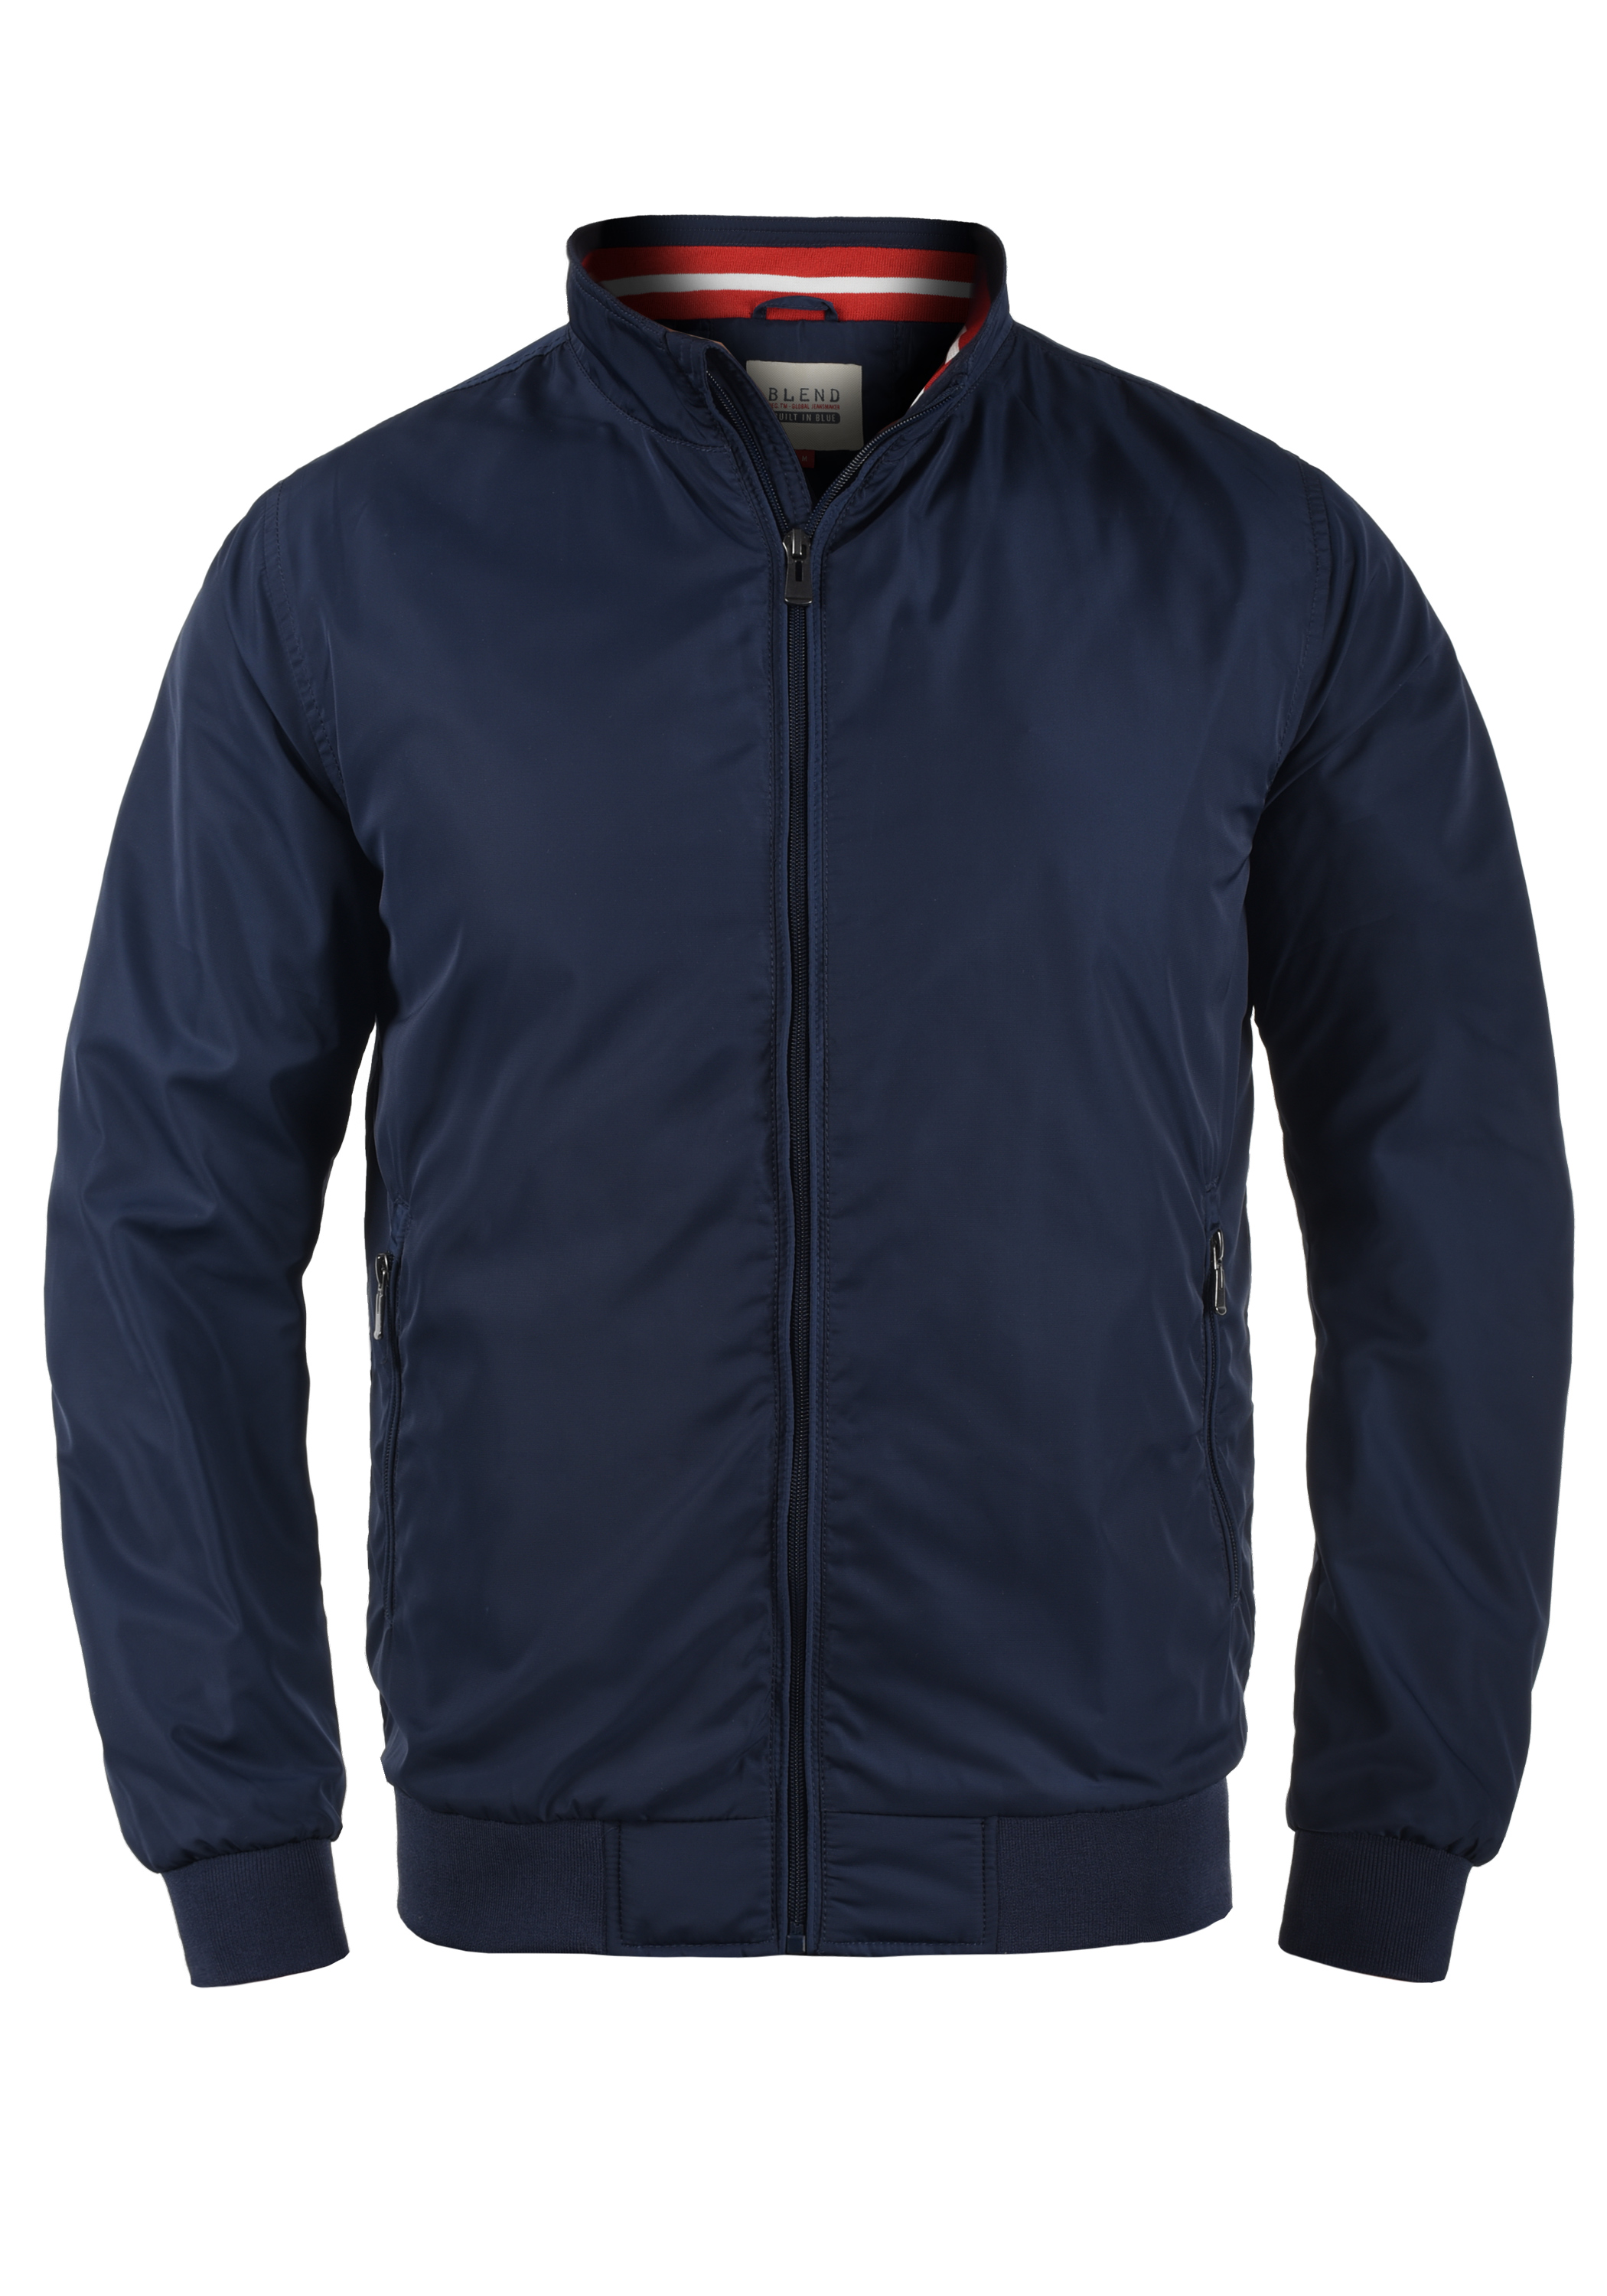 Куртка BLEND Kurzjacke, синий куртка blend kurzjacke bhouterwear 20715931 синий